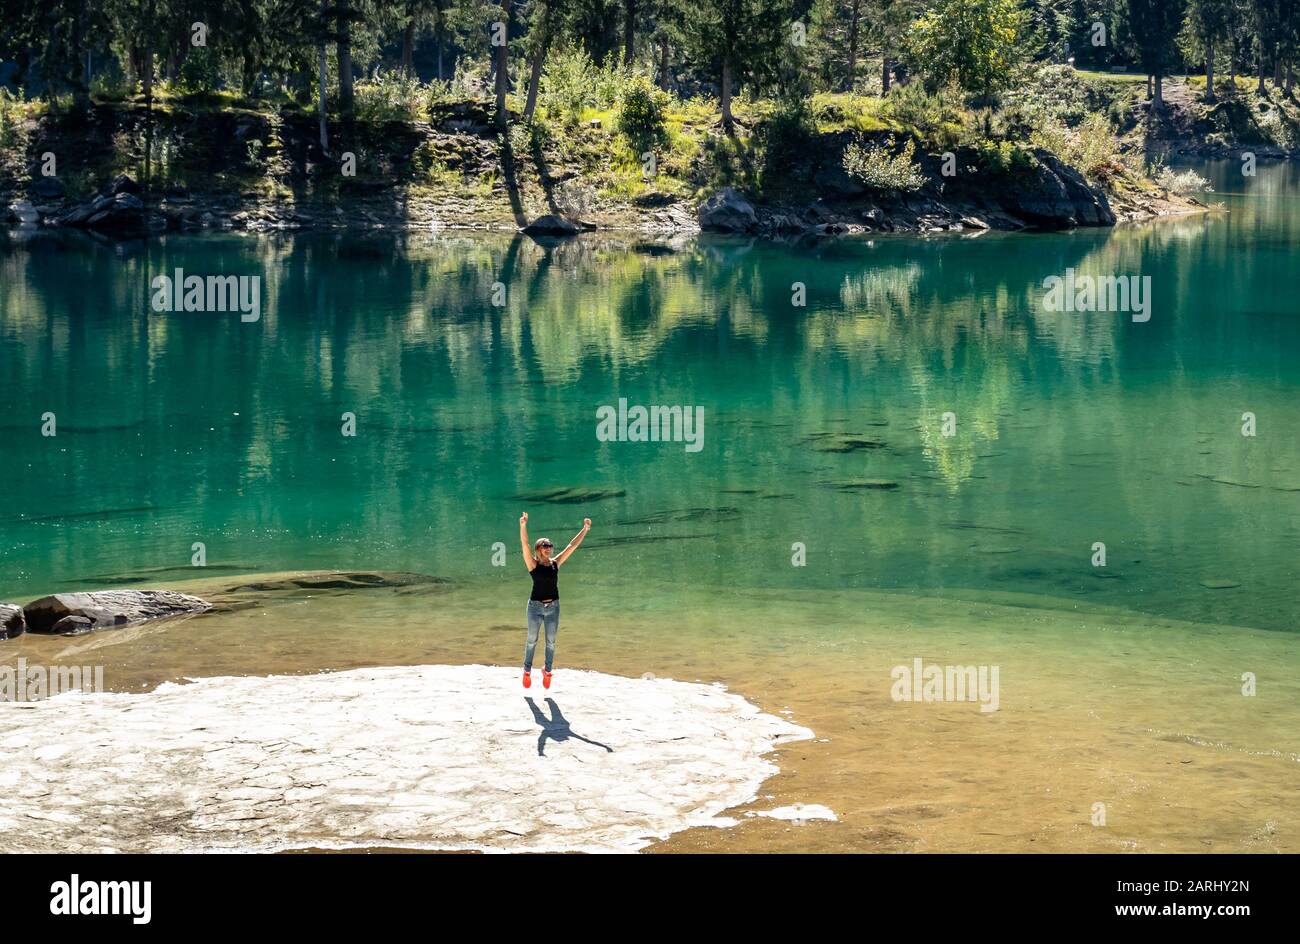 Saut pour la joie d'être dans un endroit si étonnant, un lac vert incroyable dans les montagnes suisses. Banque D'Images